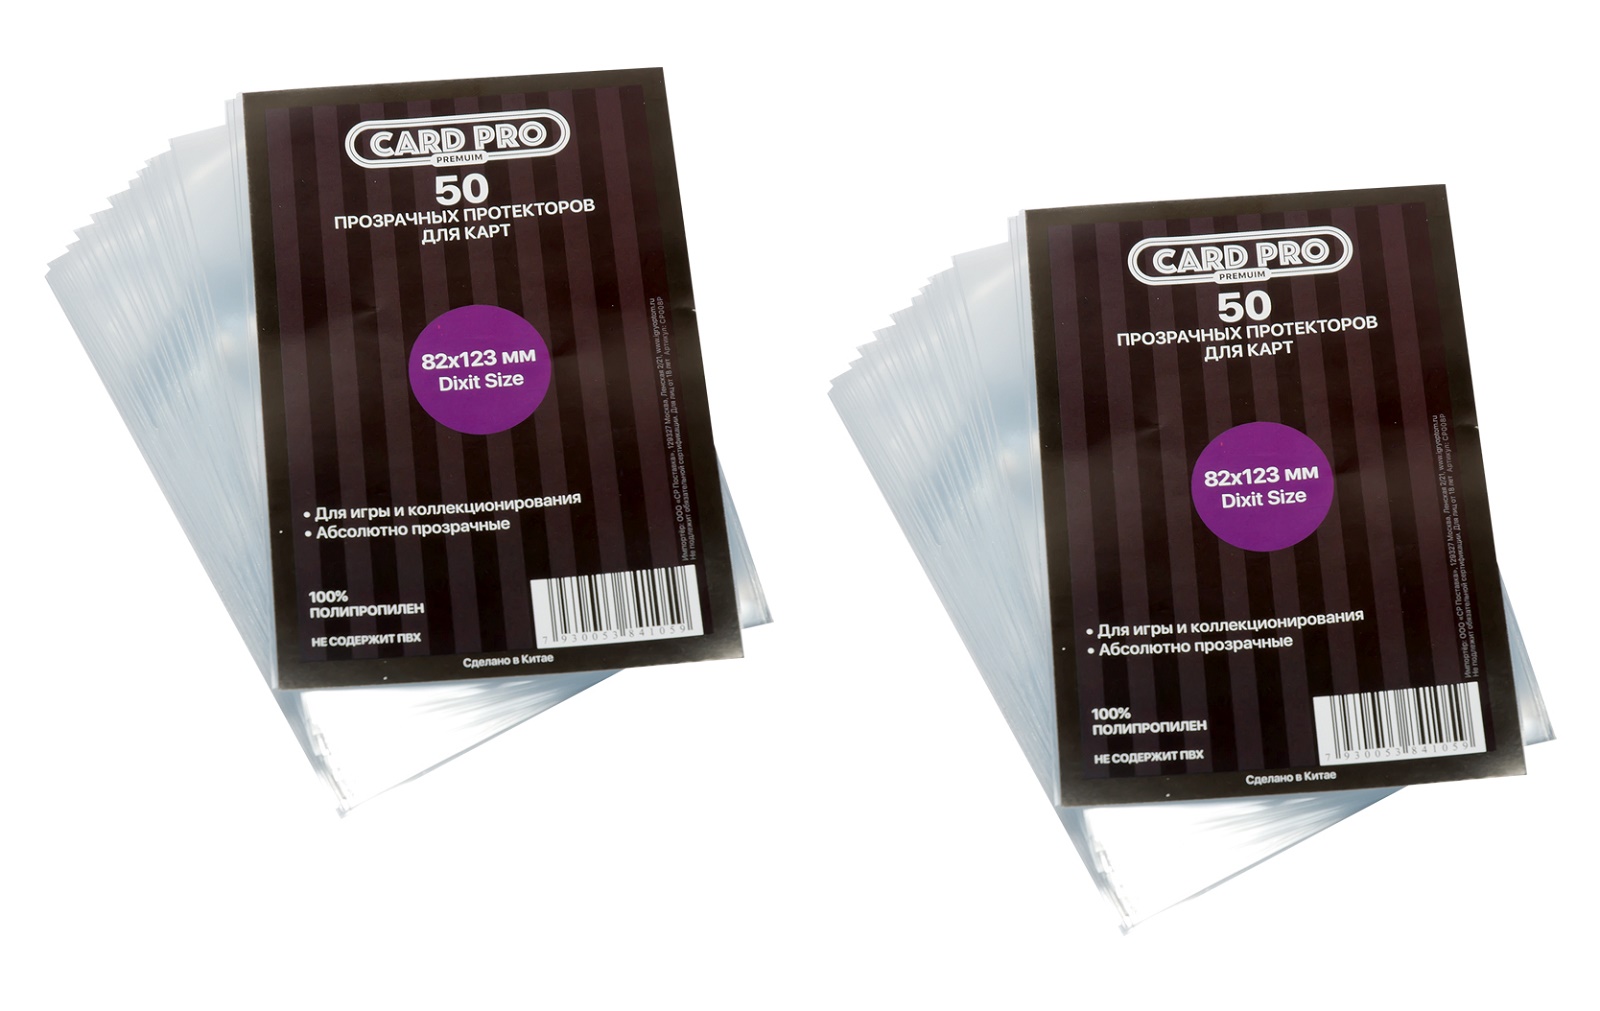 Протекторы Card-Pro PREMIUM Dixit Size для настольных игр 82x123 мм. 2 пачки прозрачные протекторы card pro sticker size resealable 52x67 мм 2 пачки